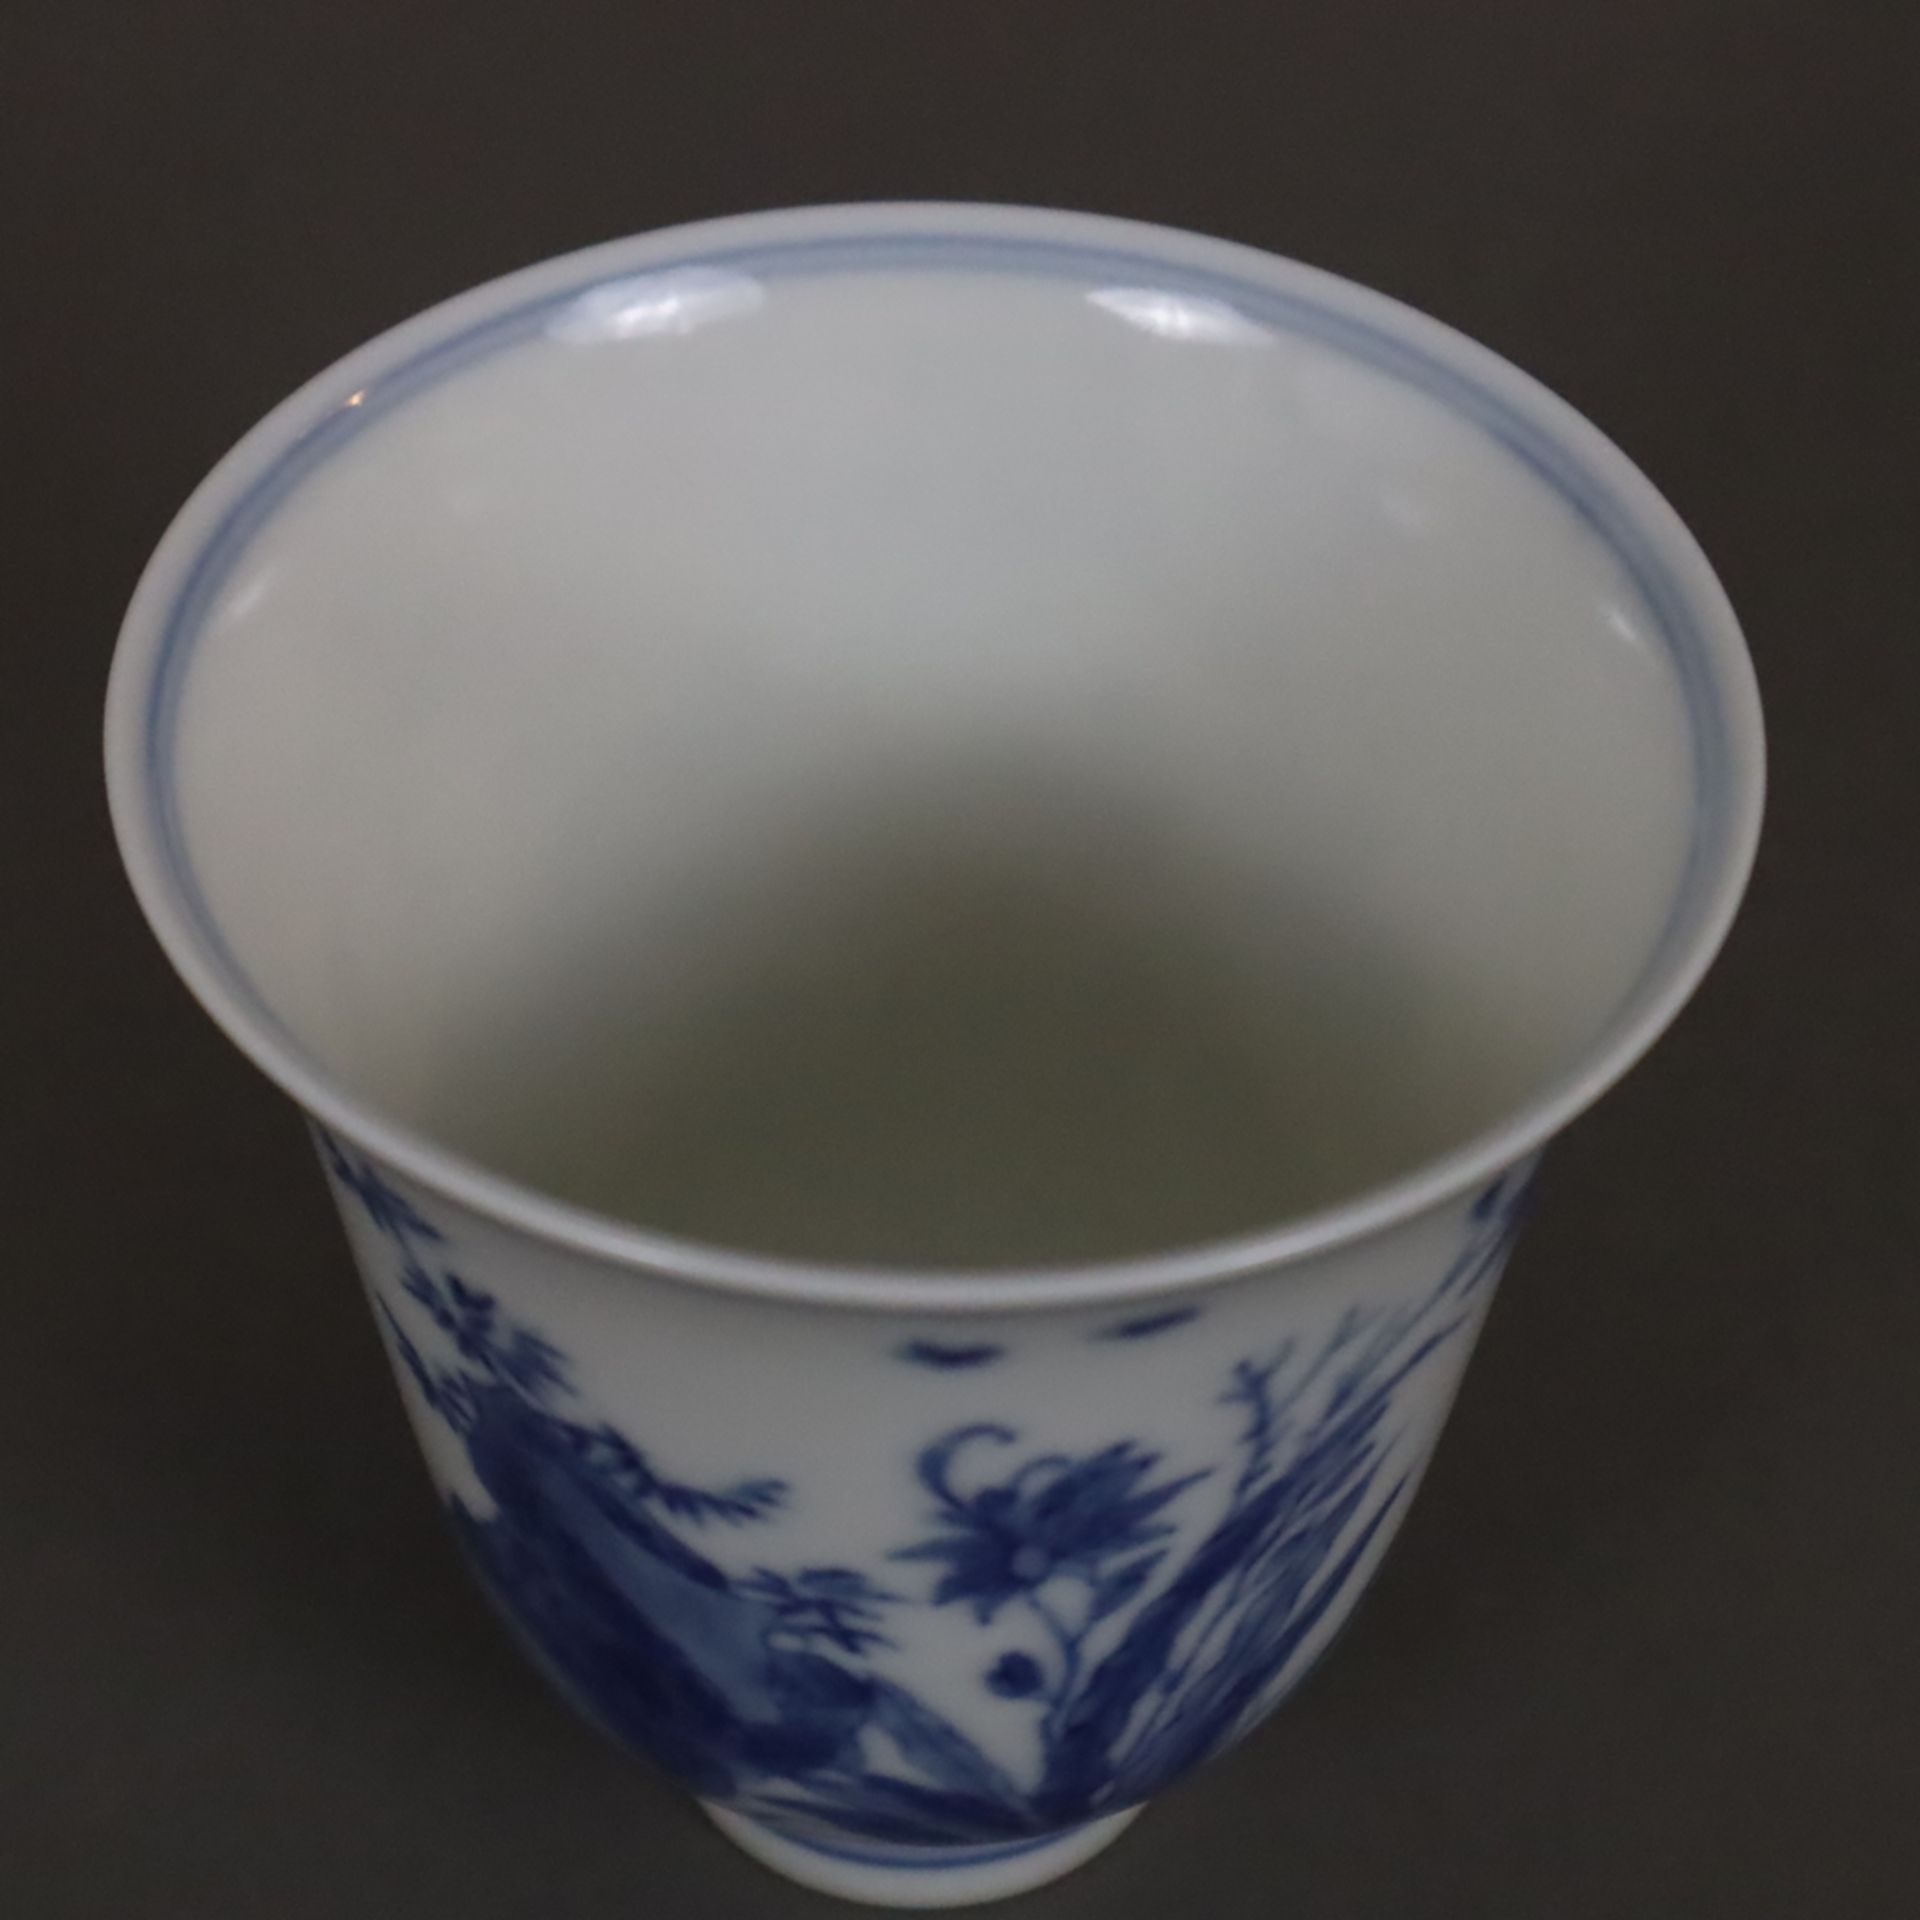 Blau-weißer Porzellanbecher - China, frühes 20.Jh., glockenförmige Kuppa auf schmalem Standring, um - Image 2 of 6